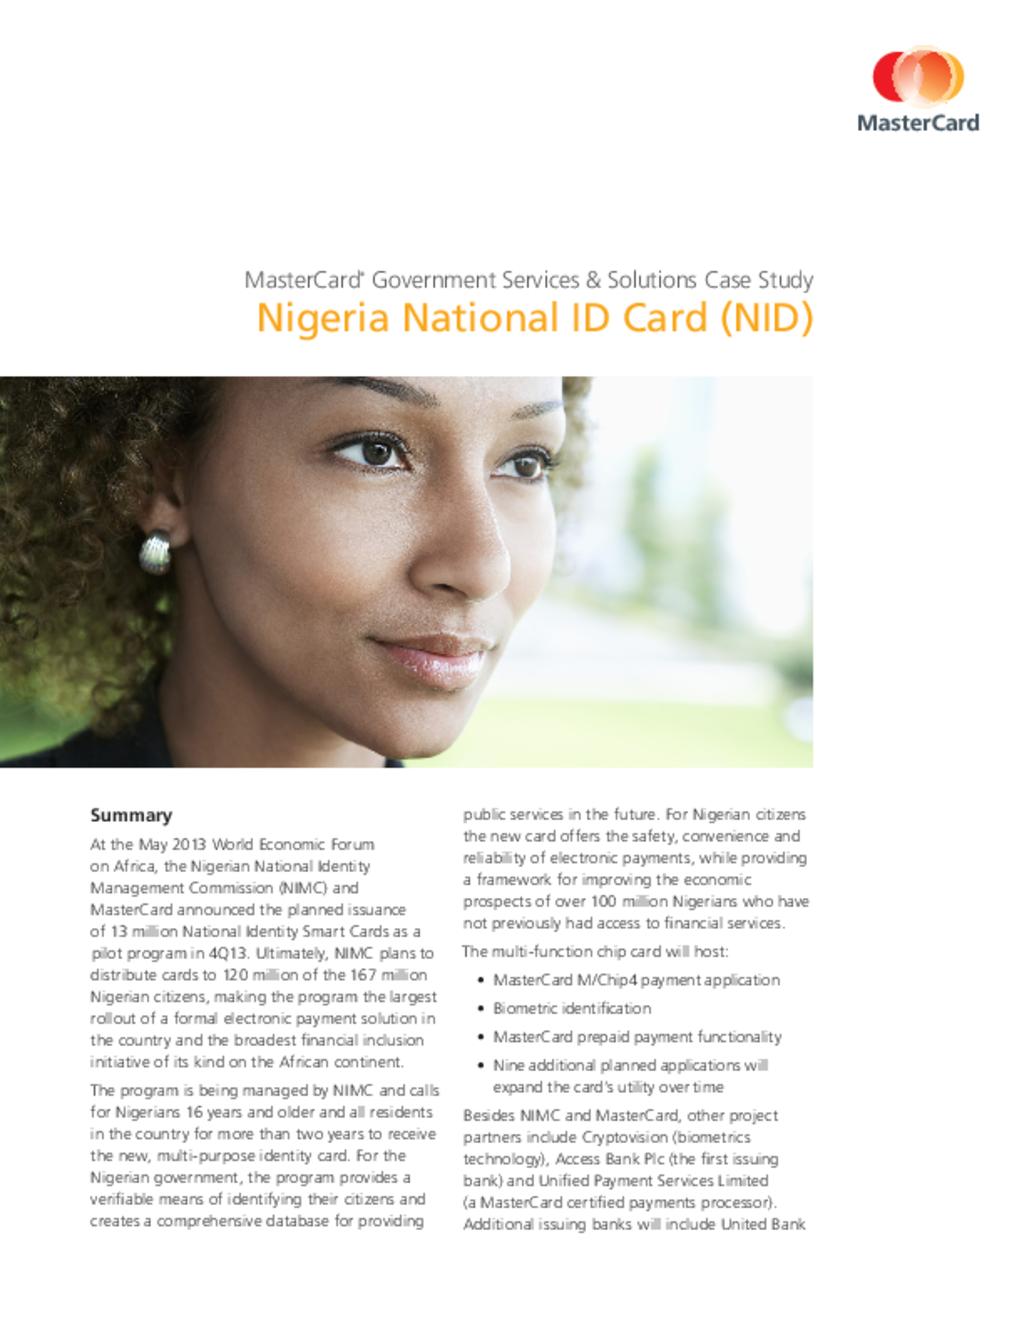 Nigerian National ID card